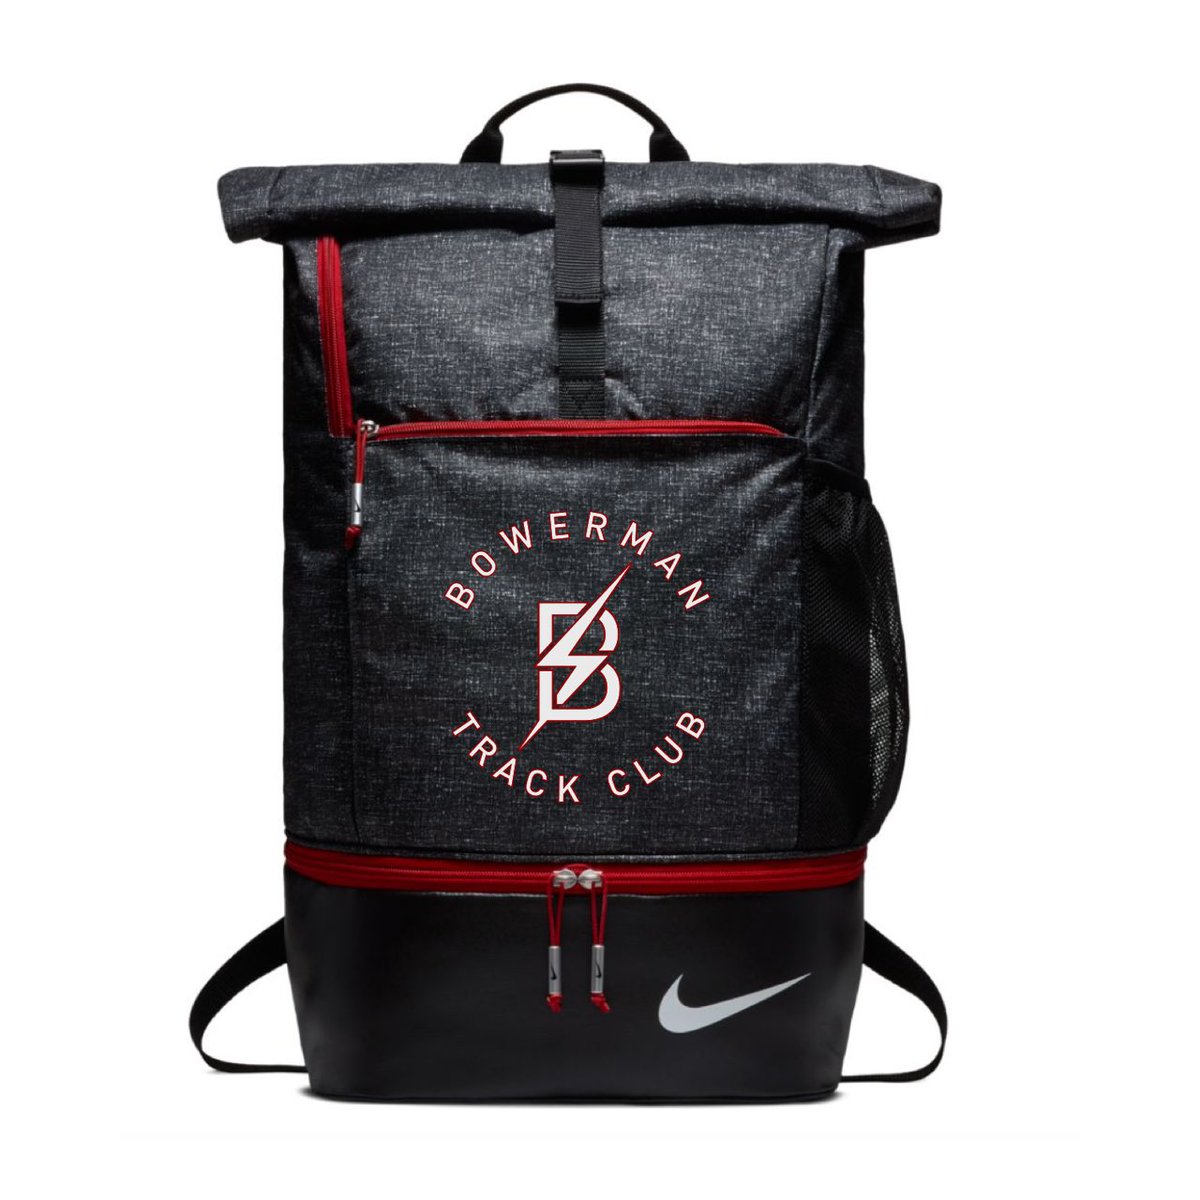 Bowerman Track Club Backpack 2020年モデル